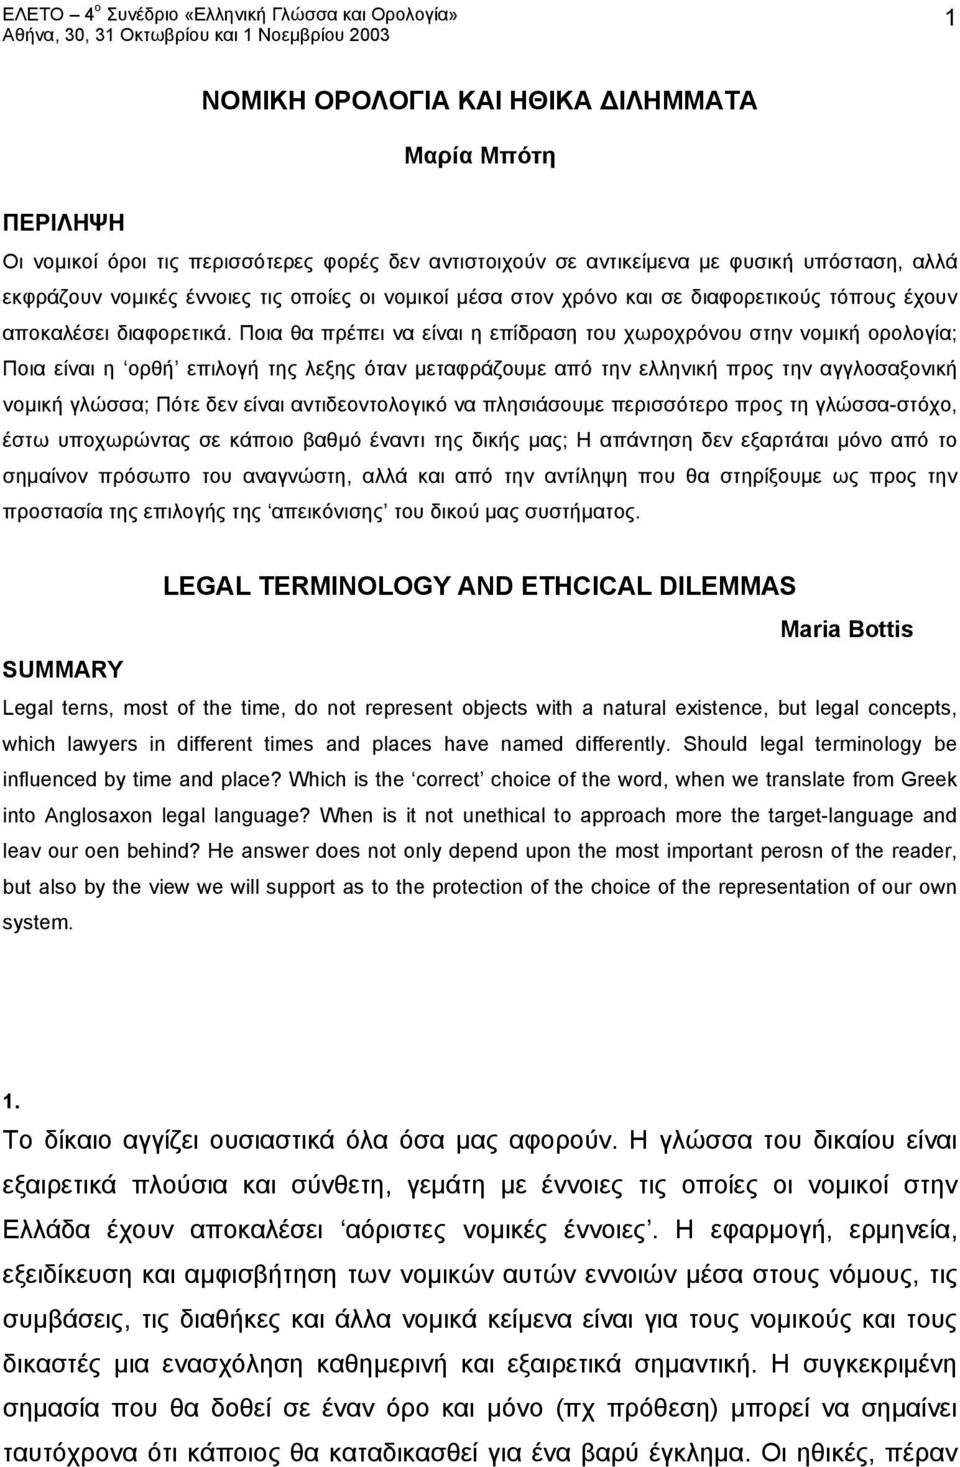 Ποια θα πρέπει να είναι η επίδραση του χωροχρόνου στην νομική ορολογία; Ποια είναι η ορθή επιλογή της λεξης όταν μεταφράζουμε από την ελληνική προς την αγγλοσαξονική νομική γλώσσα; Πότε δεν είναι